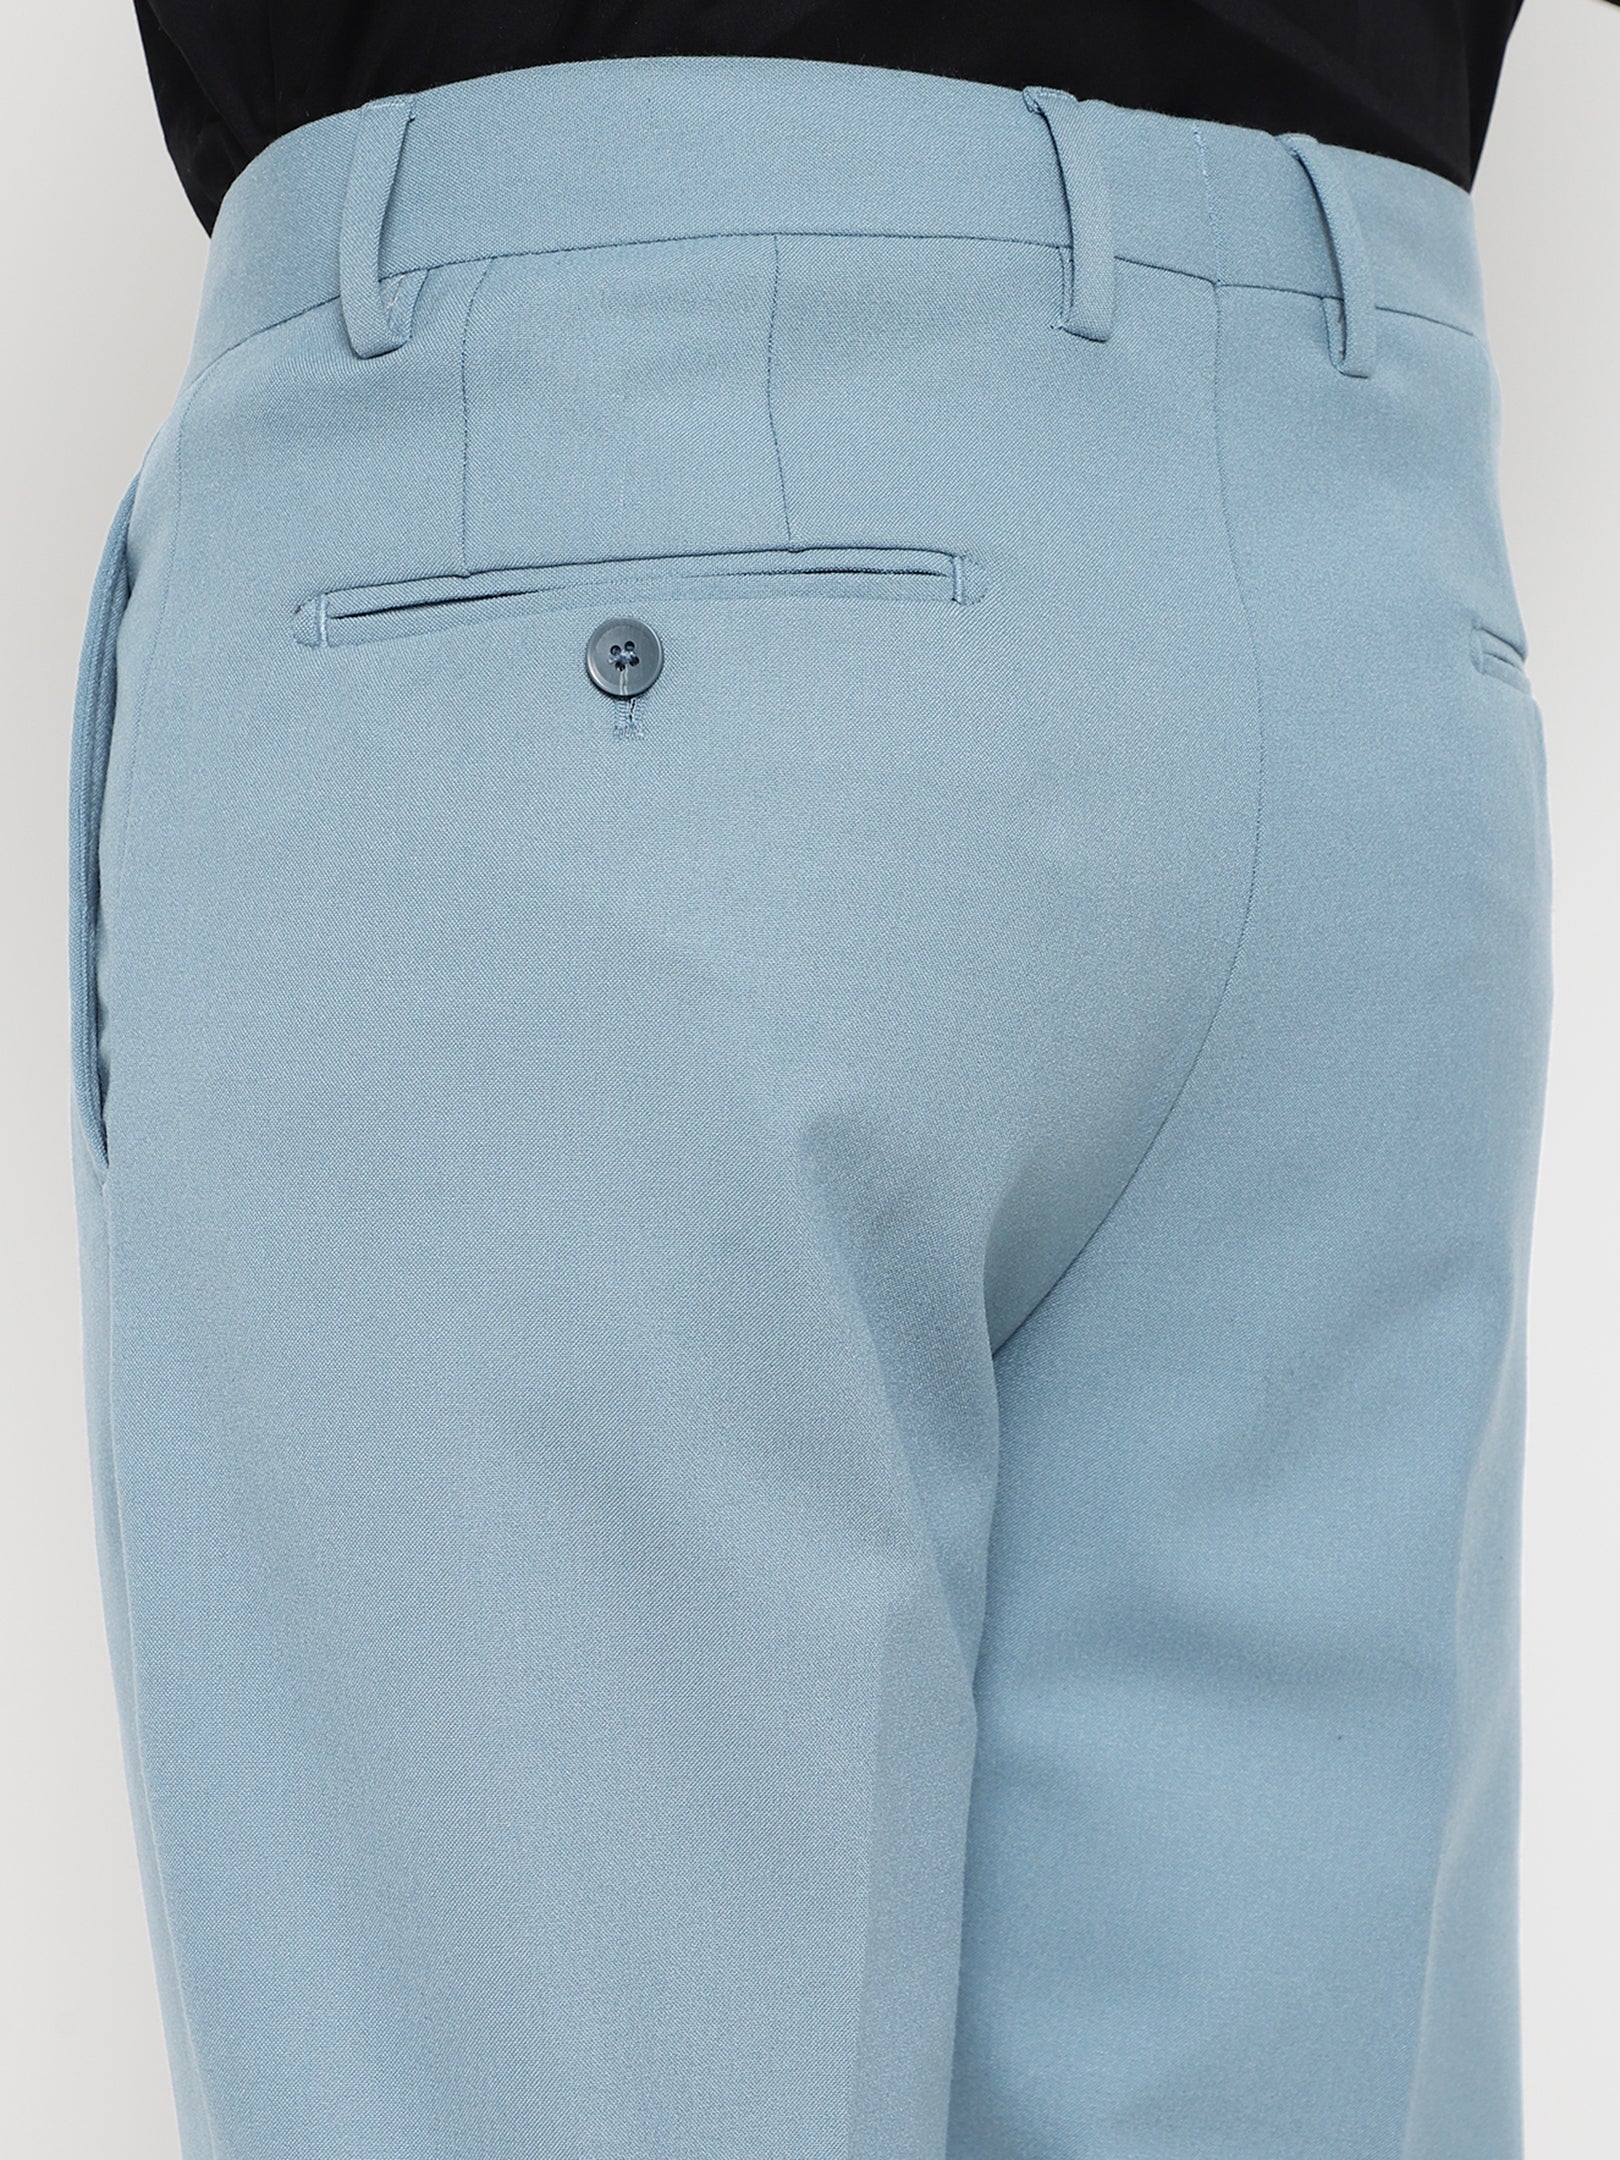 Suit Pants - Light blue - Ladies | H&M US